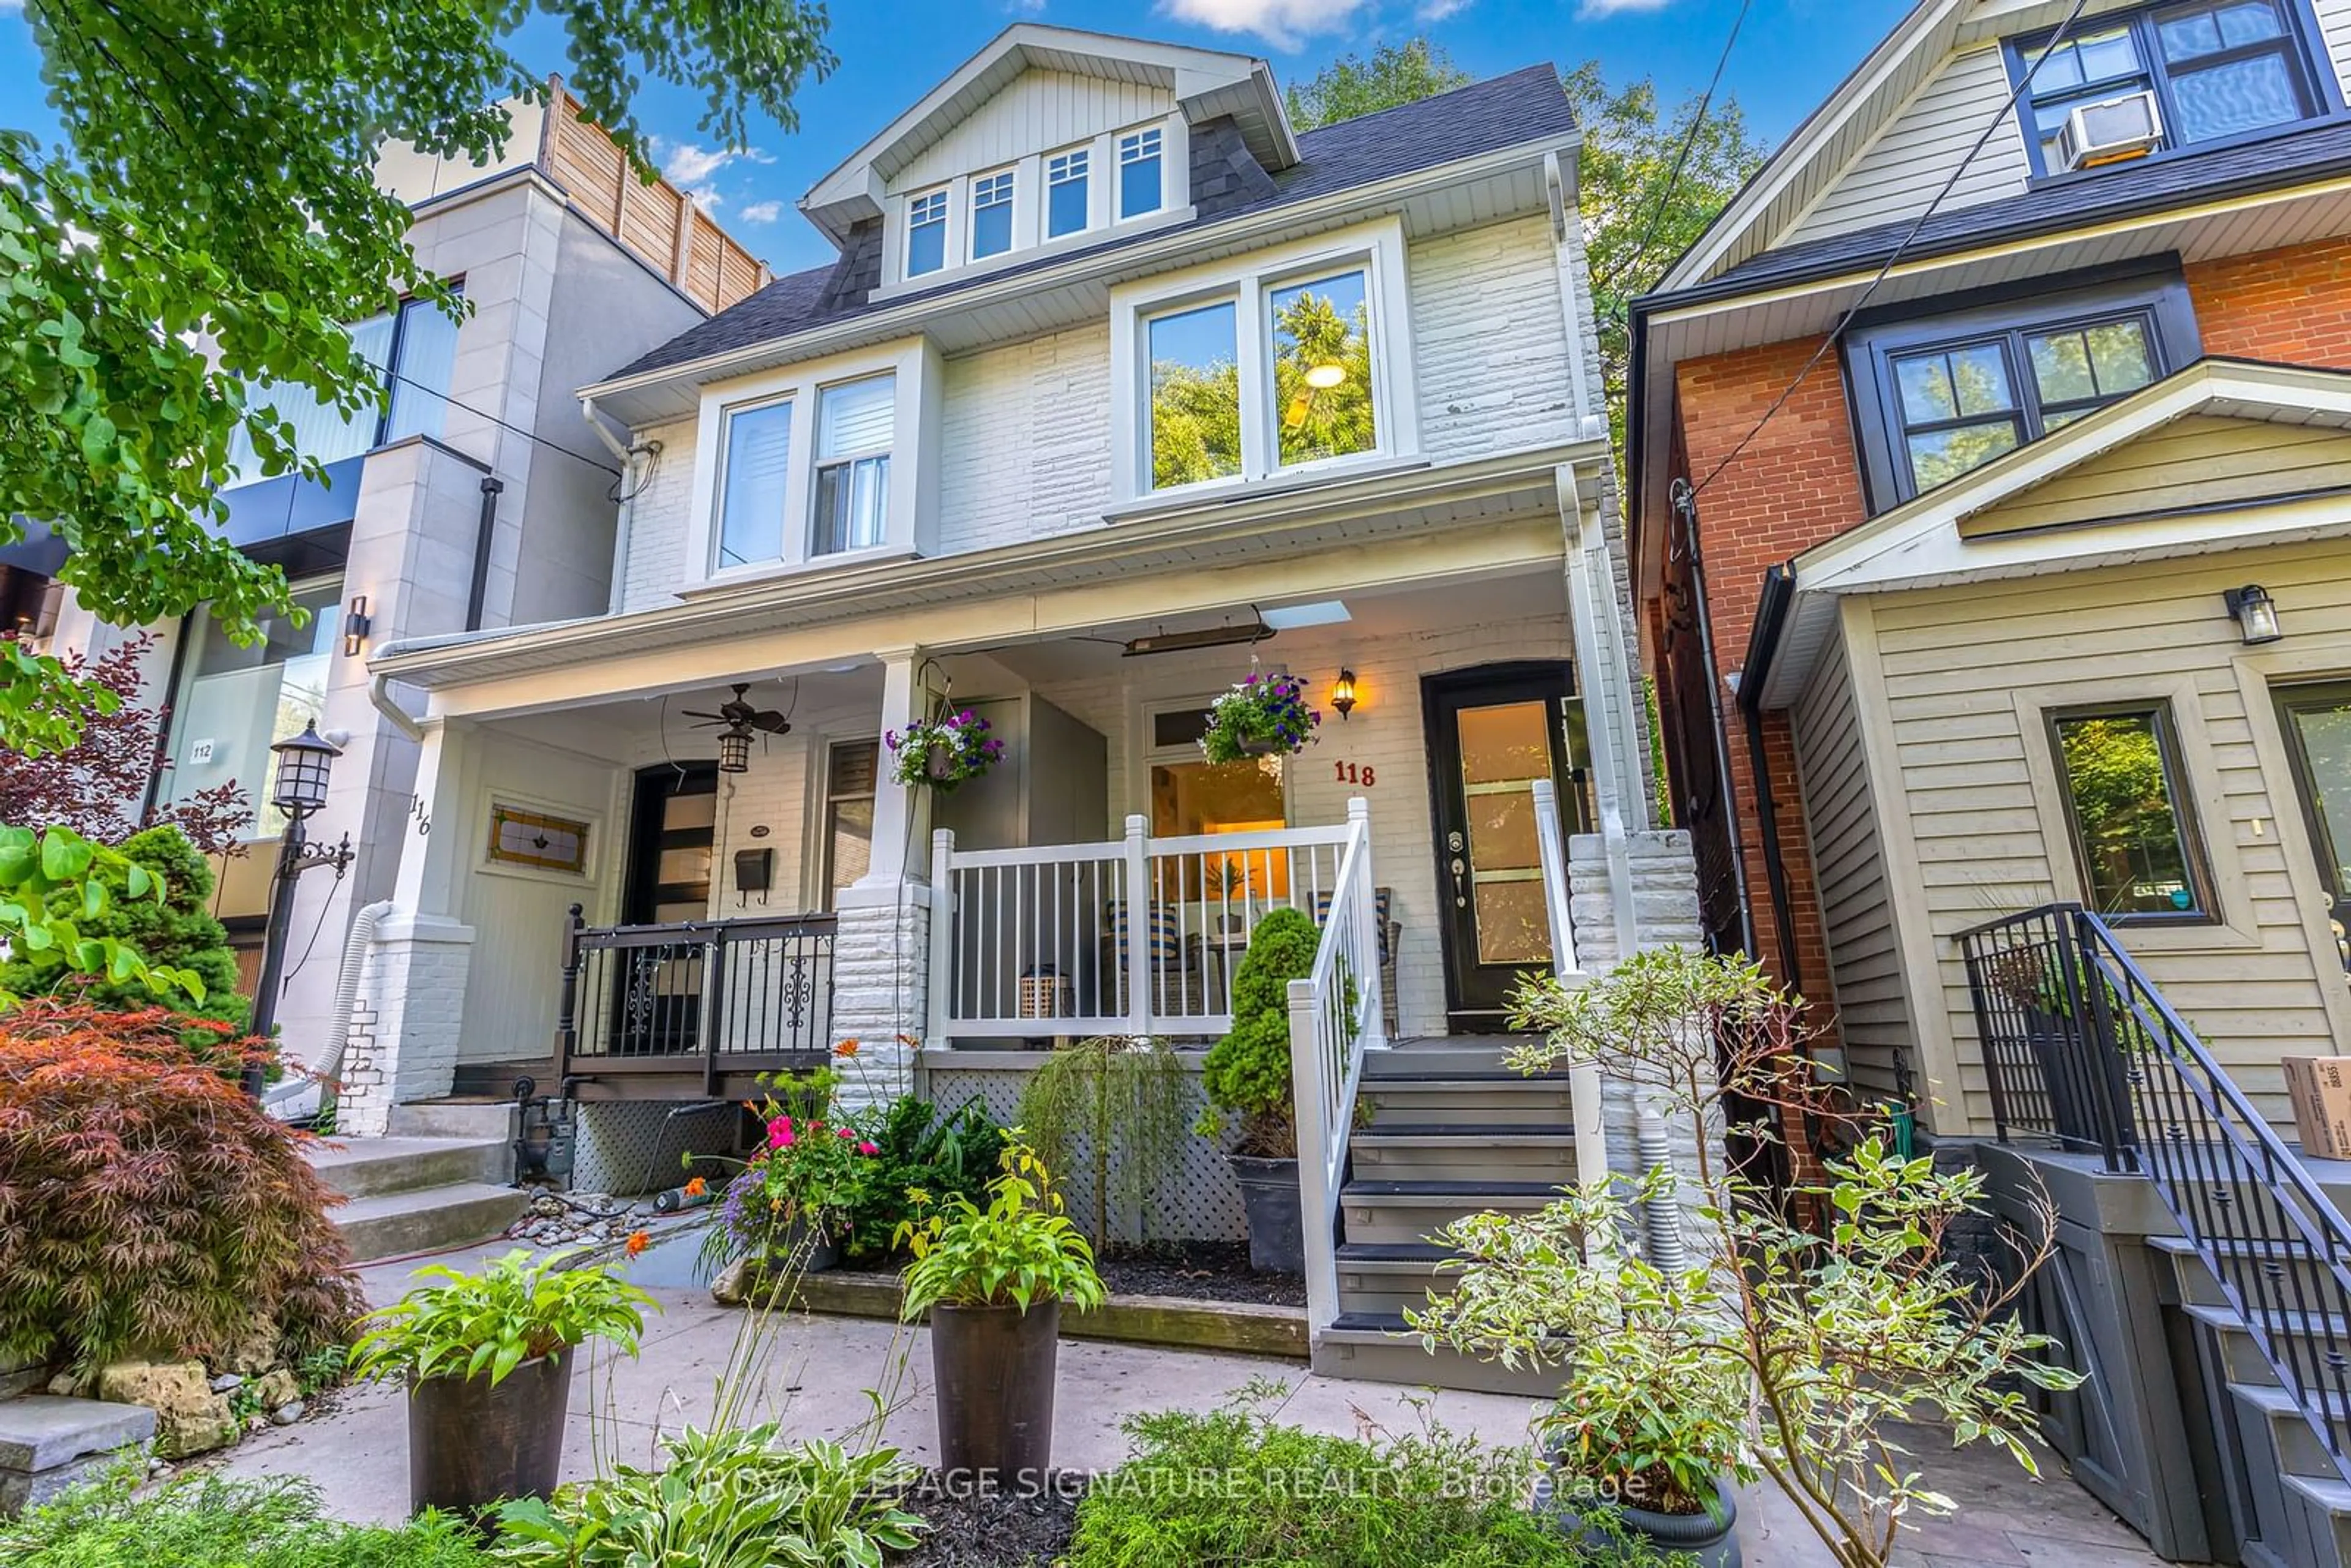 Home with brick exterior material for 118 Wheeler Ave, Toronto Ontario M4L 3V2